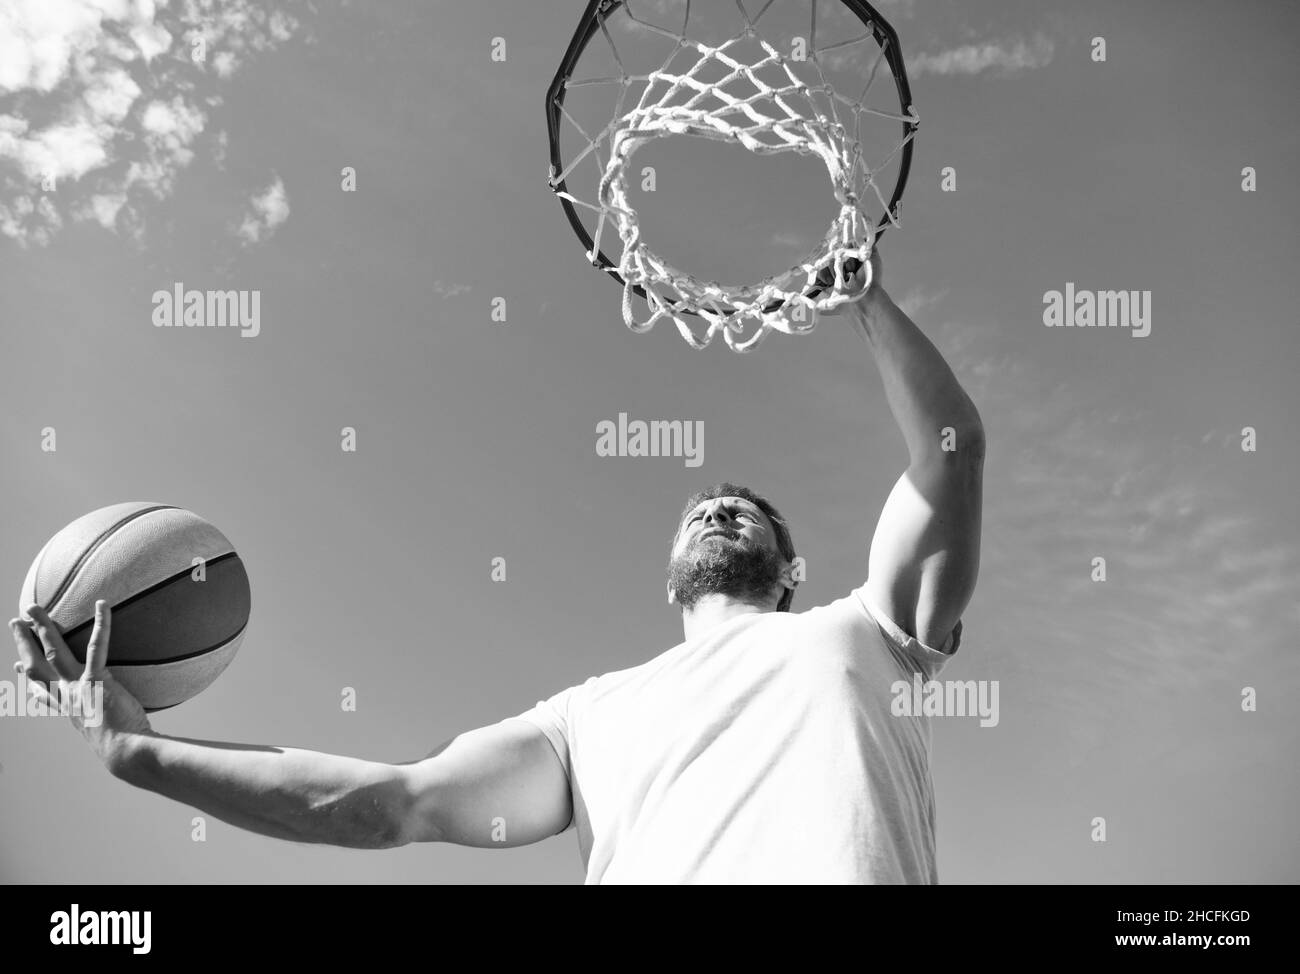 homme jouer au basket-ball extérieur. homme sauter pour lancer le ballon. gars jouer au basket-ball. Banque D'Images